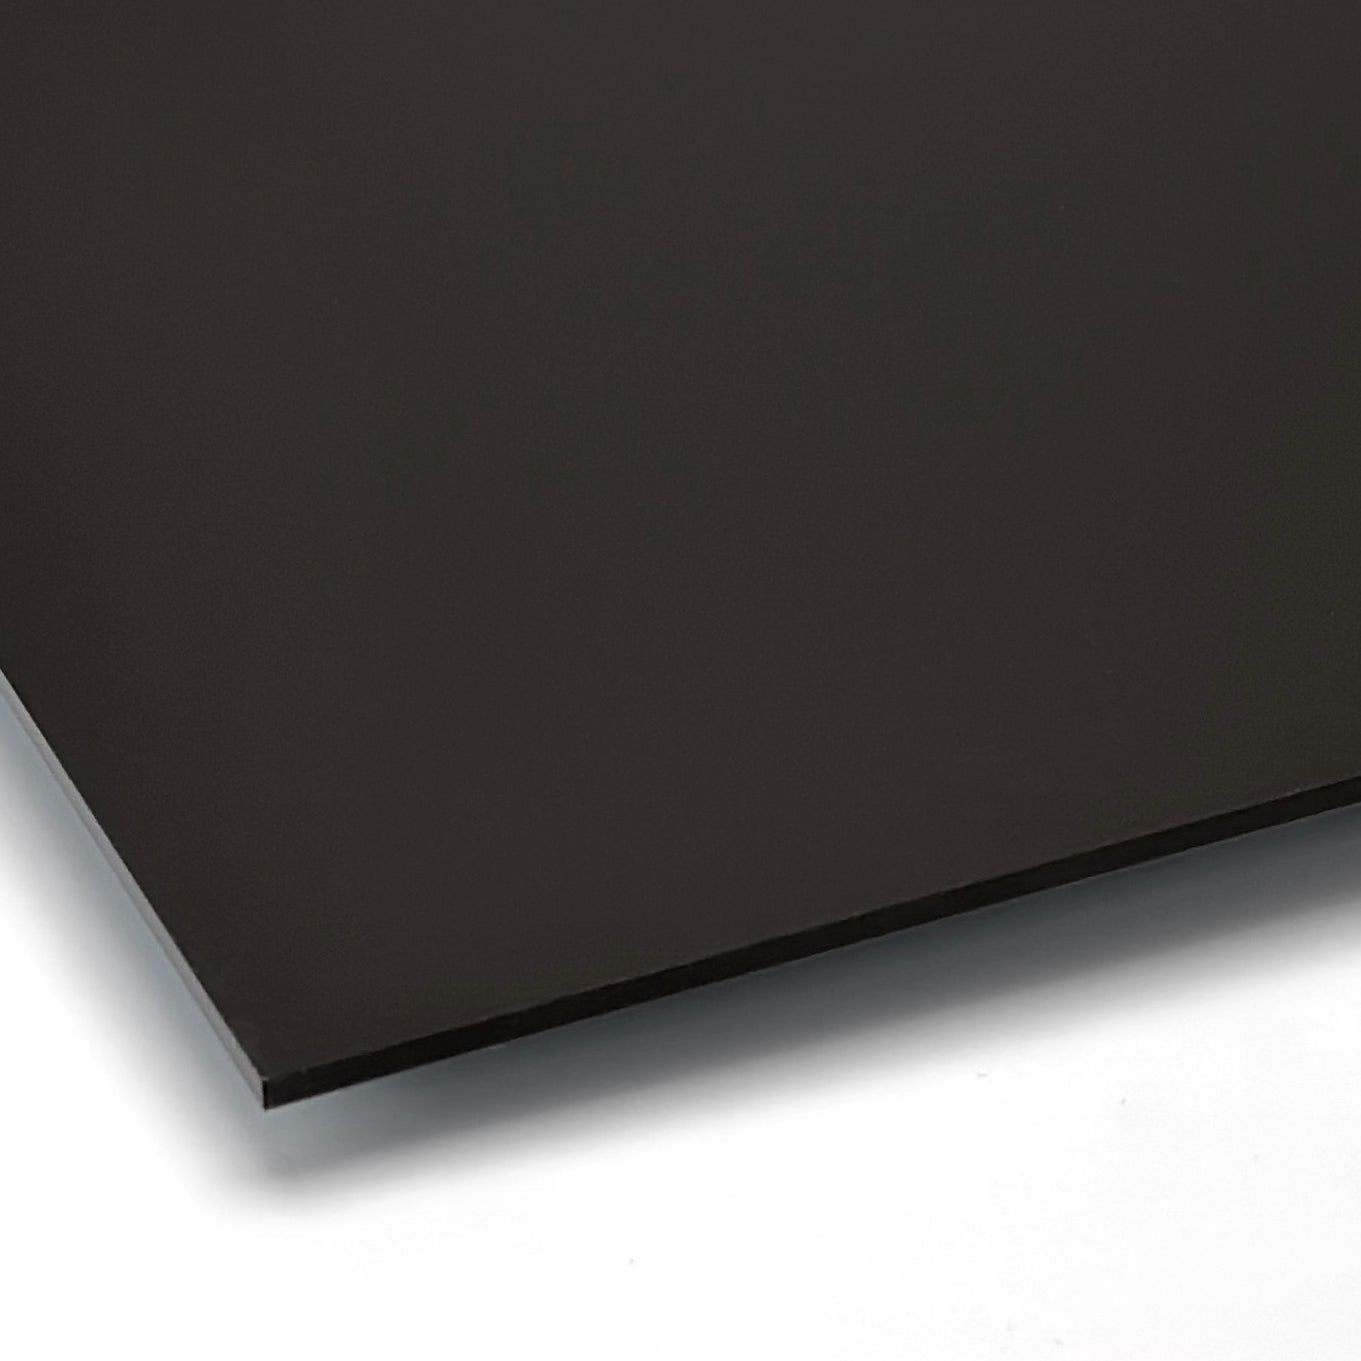 Matta-akryyli, musta, laserleikkuu ja painatus - 300x200mm